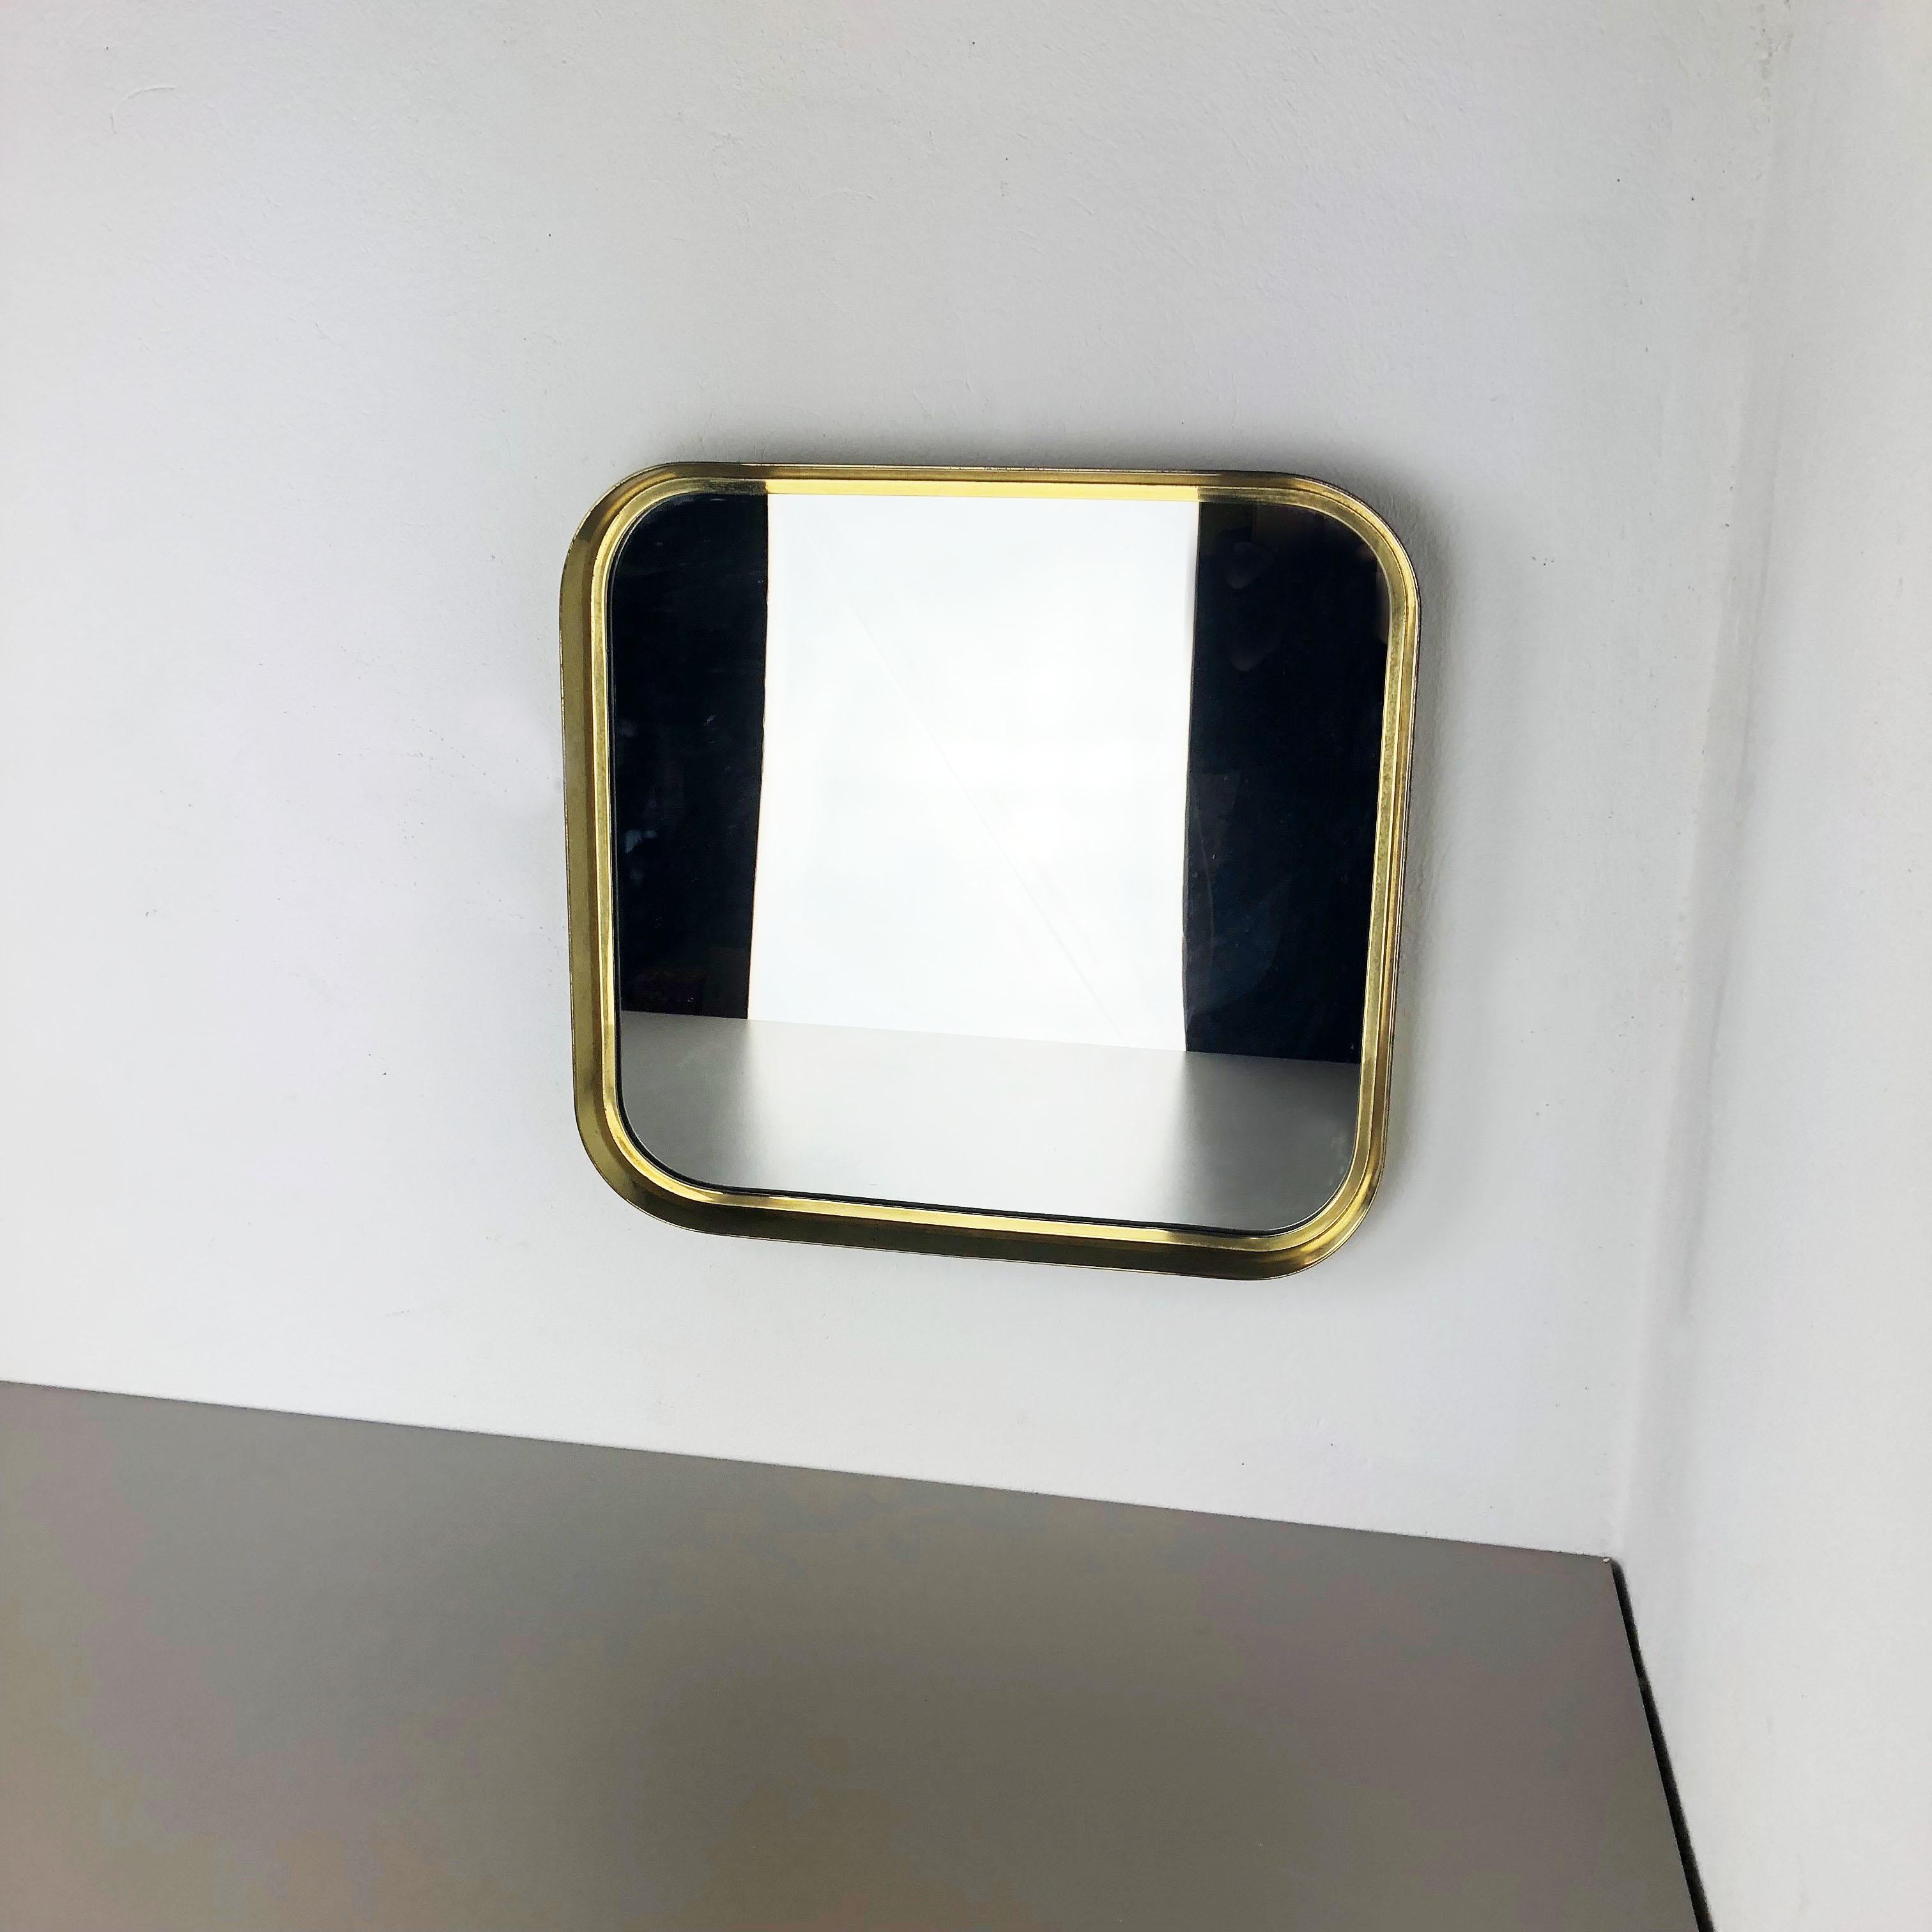 Article:

Wall mirror


Producer:

Vereinigte Werkstätten München / Münchener Zierspiegel


Origin:

Germany


Material:

Wood, glass, metal, brass


Decade:

1950s




This original midcentury wall mirror was produced in